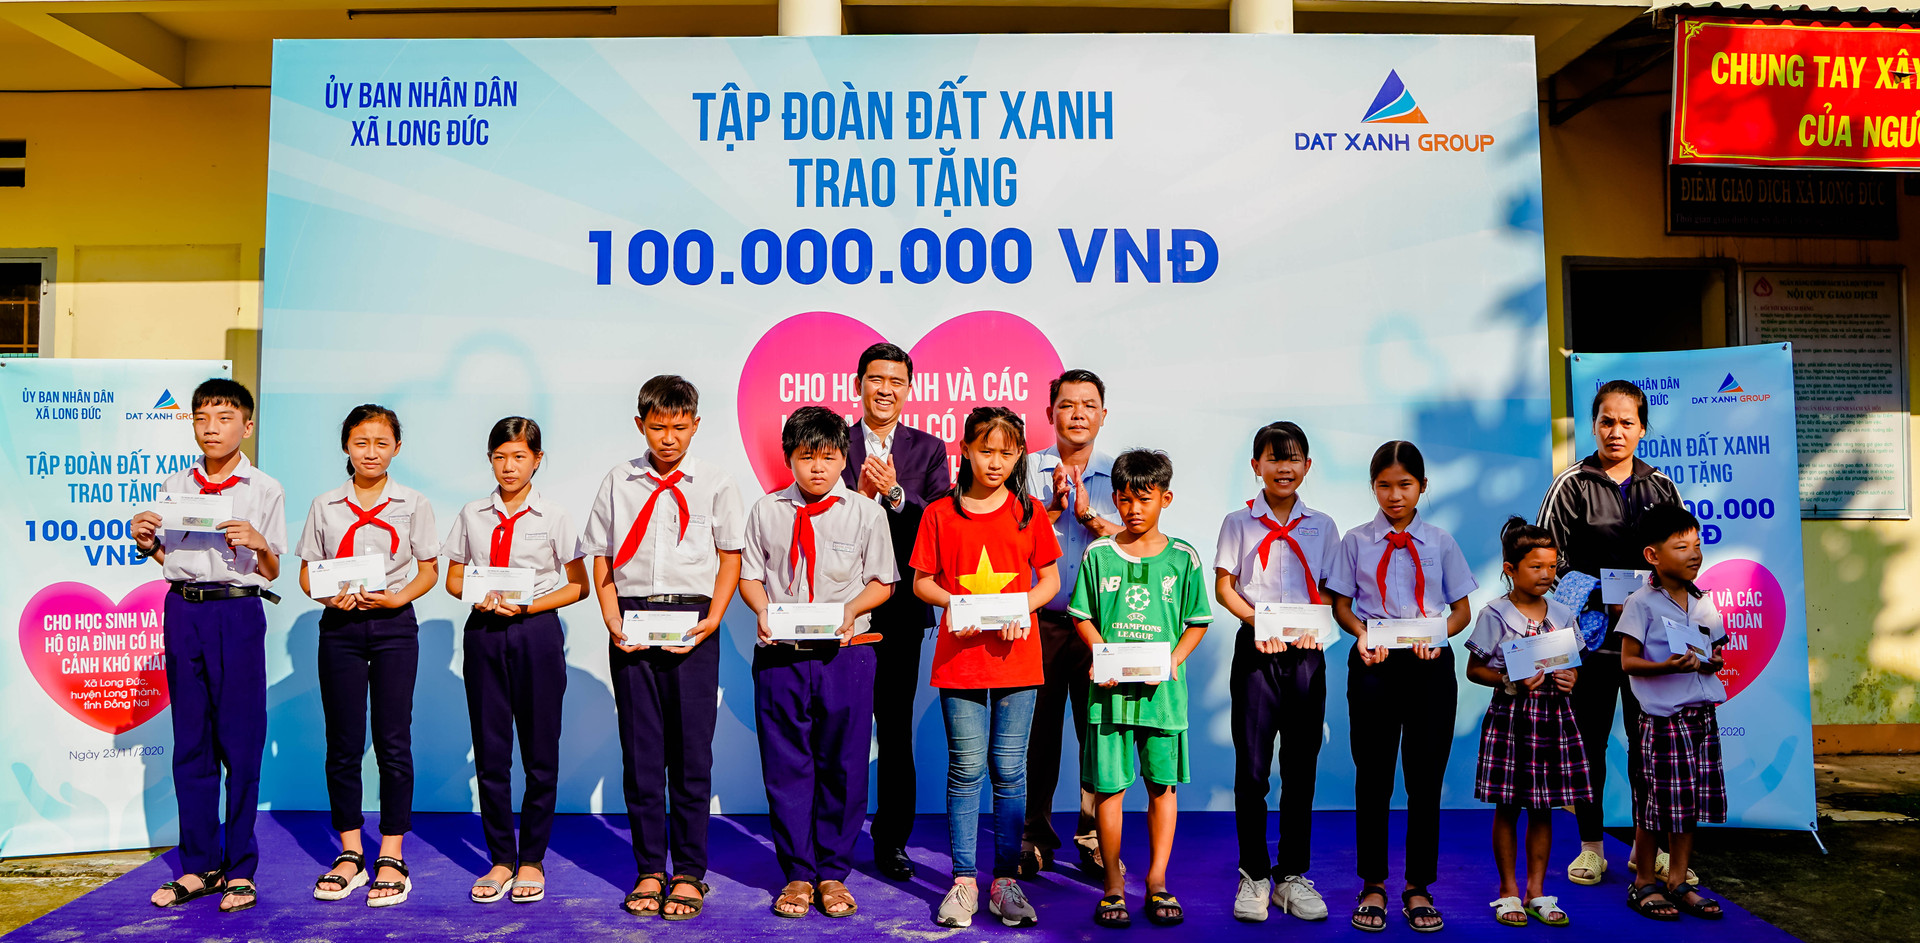 Đại diện Tập đoàn Đất Xanh trao quà và học bổng cho học sinh khó khăn các trường tại xã Long Đức, huyện Long Thành, Đồng Nai.